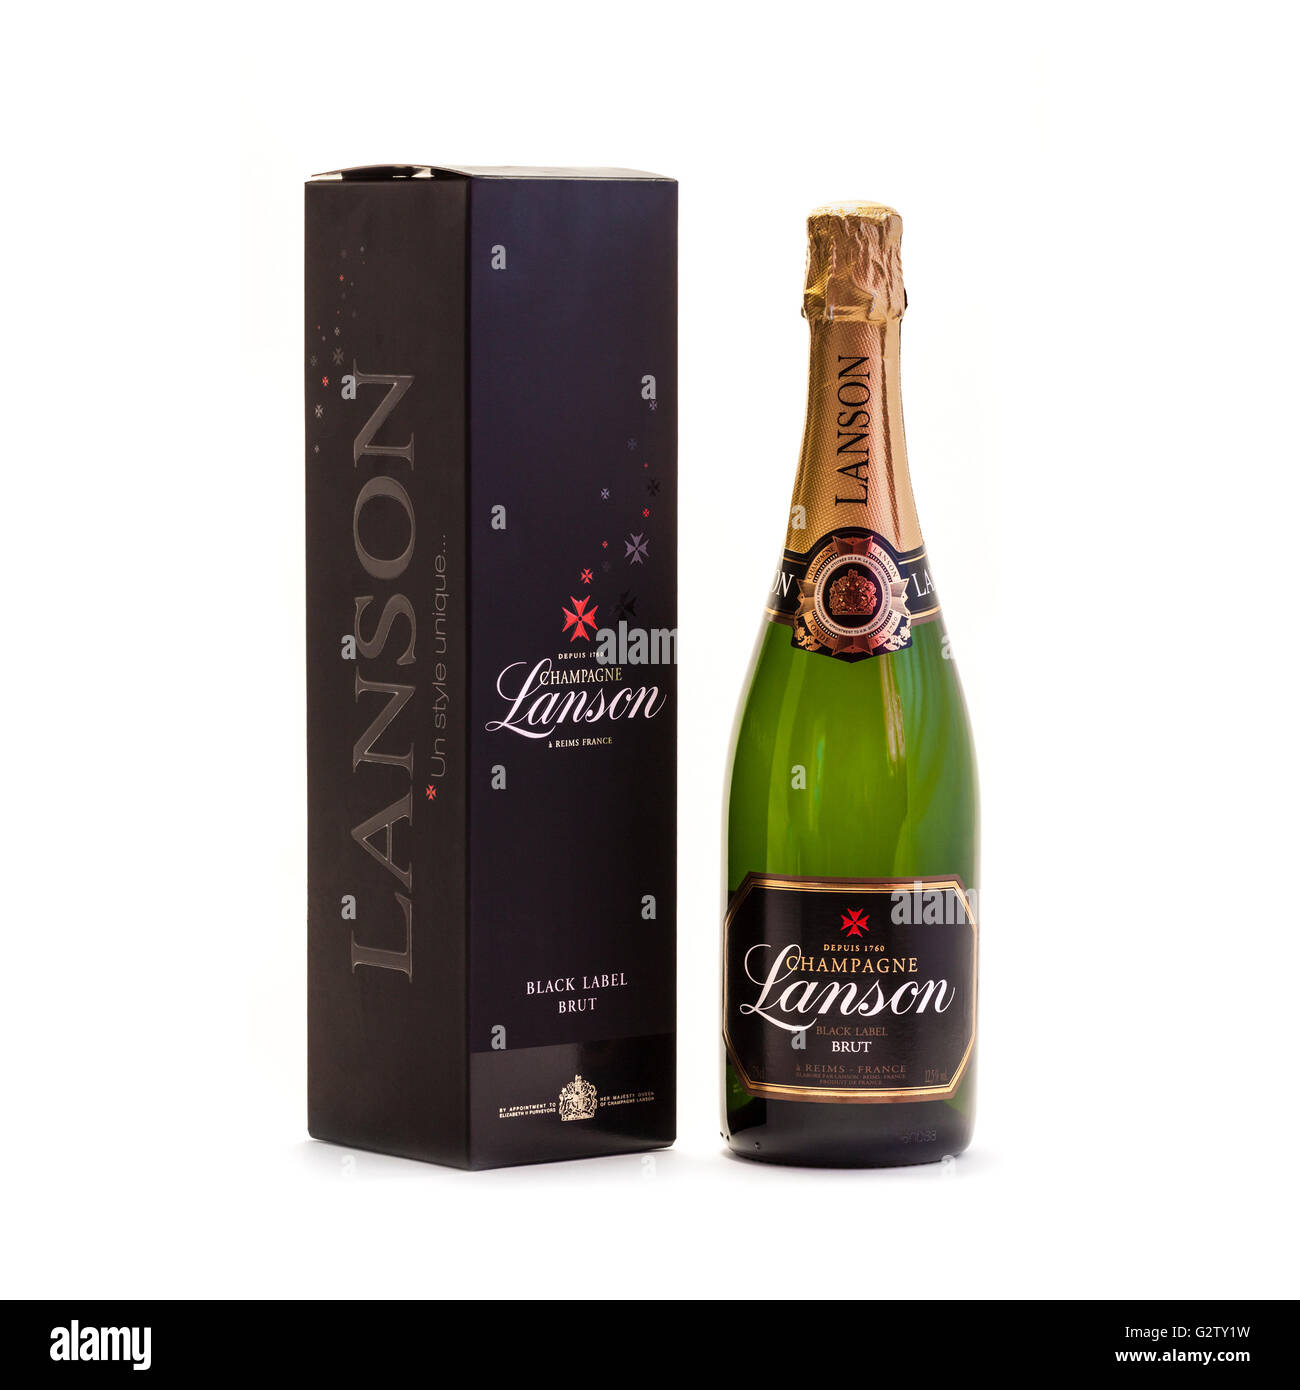 Flasche Lanson Black Label Brut Champagner mit Geschenk-Box. Lanson wurde 1760 von einem Richter, François Delamotte gegründet. Stockfoto